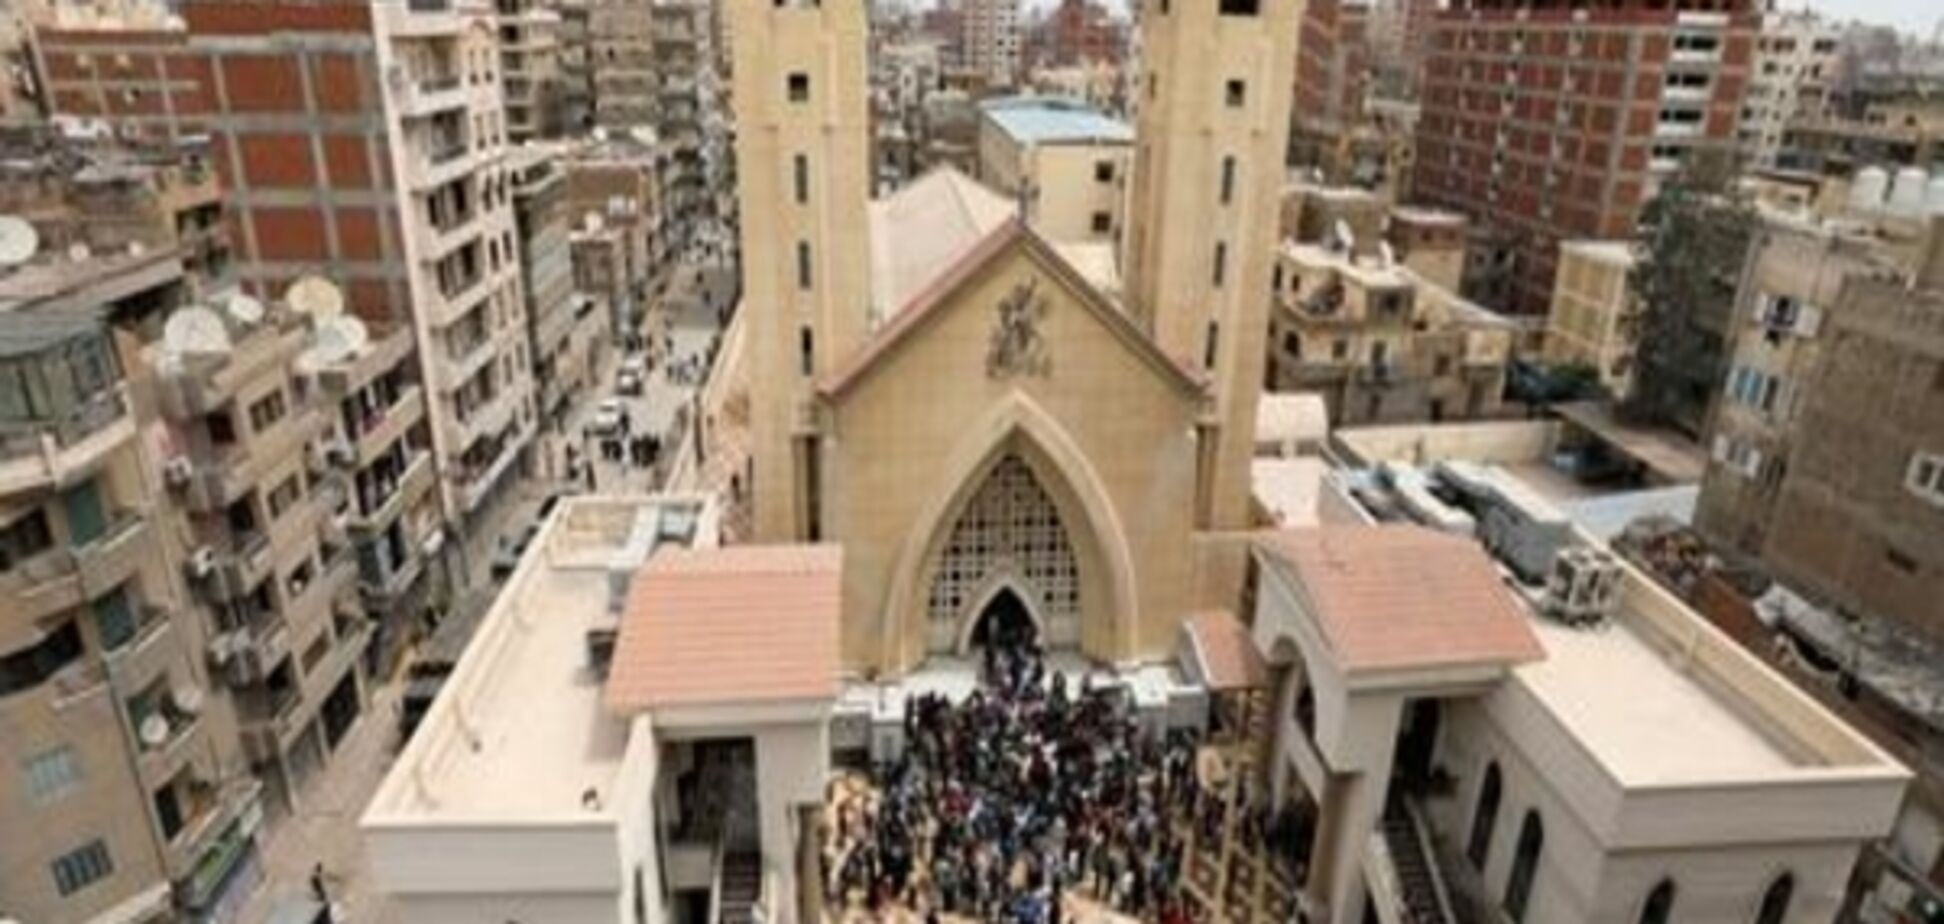 ІД взяла на себе відповідальність за напади на церкви в Єгипті